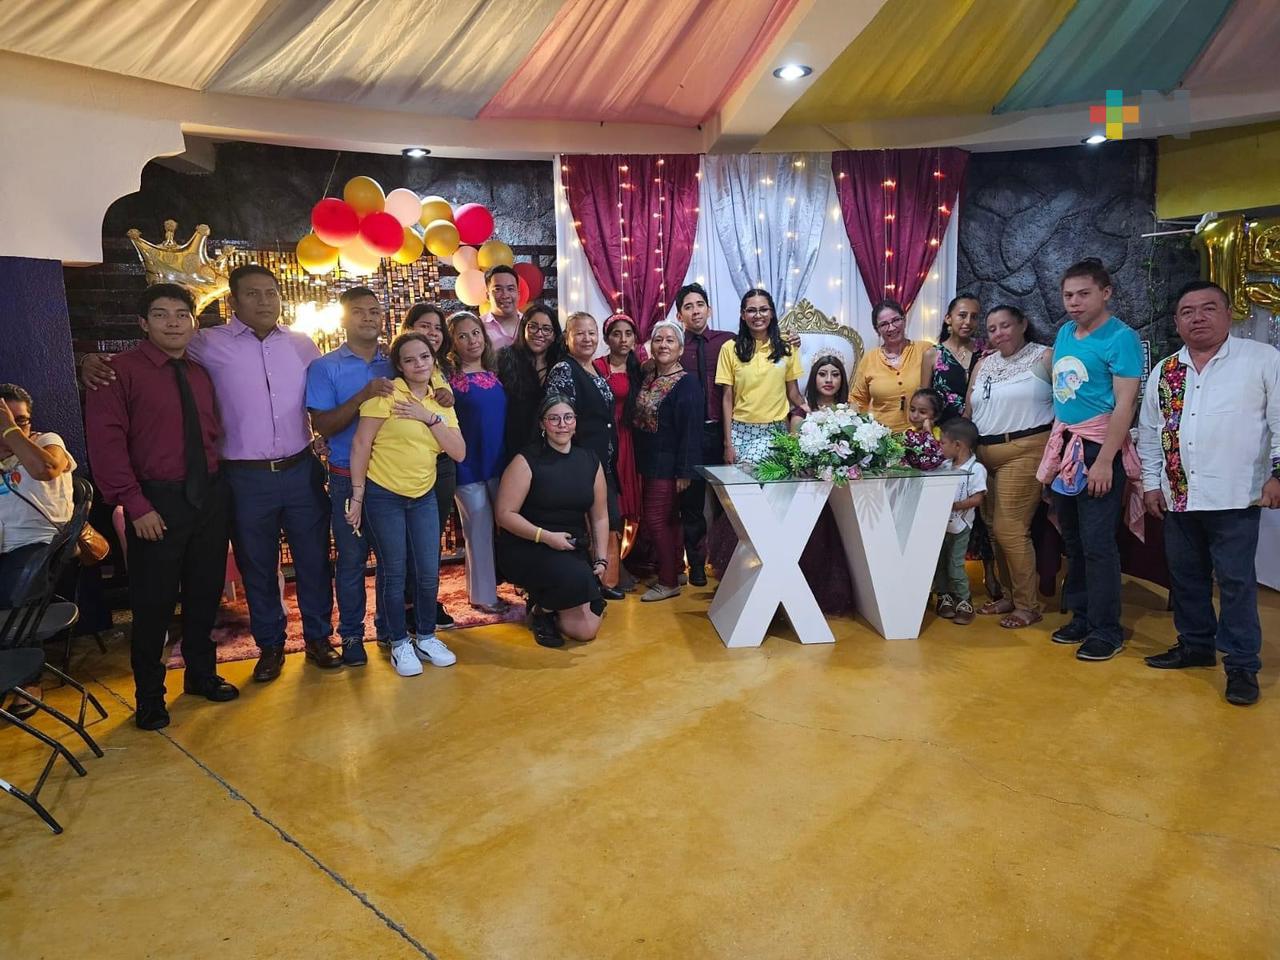 Asociación Civil, con ayuda de ciudadanos, regala fiesta de XV años a joven con cáncer